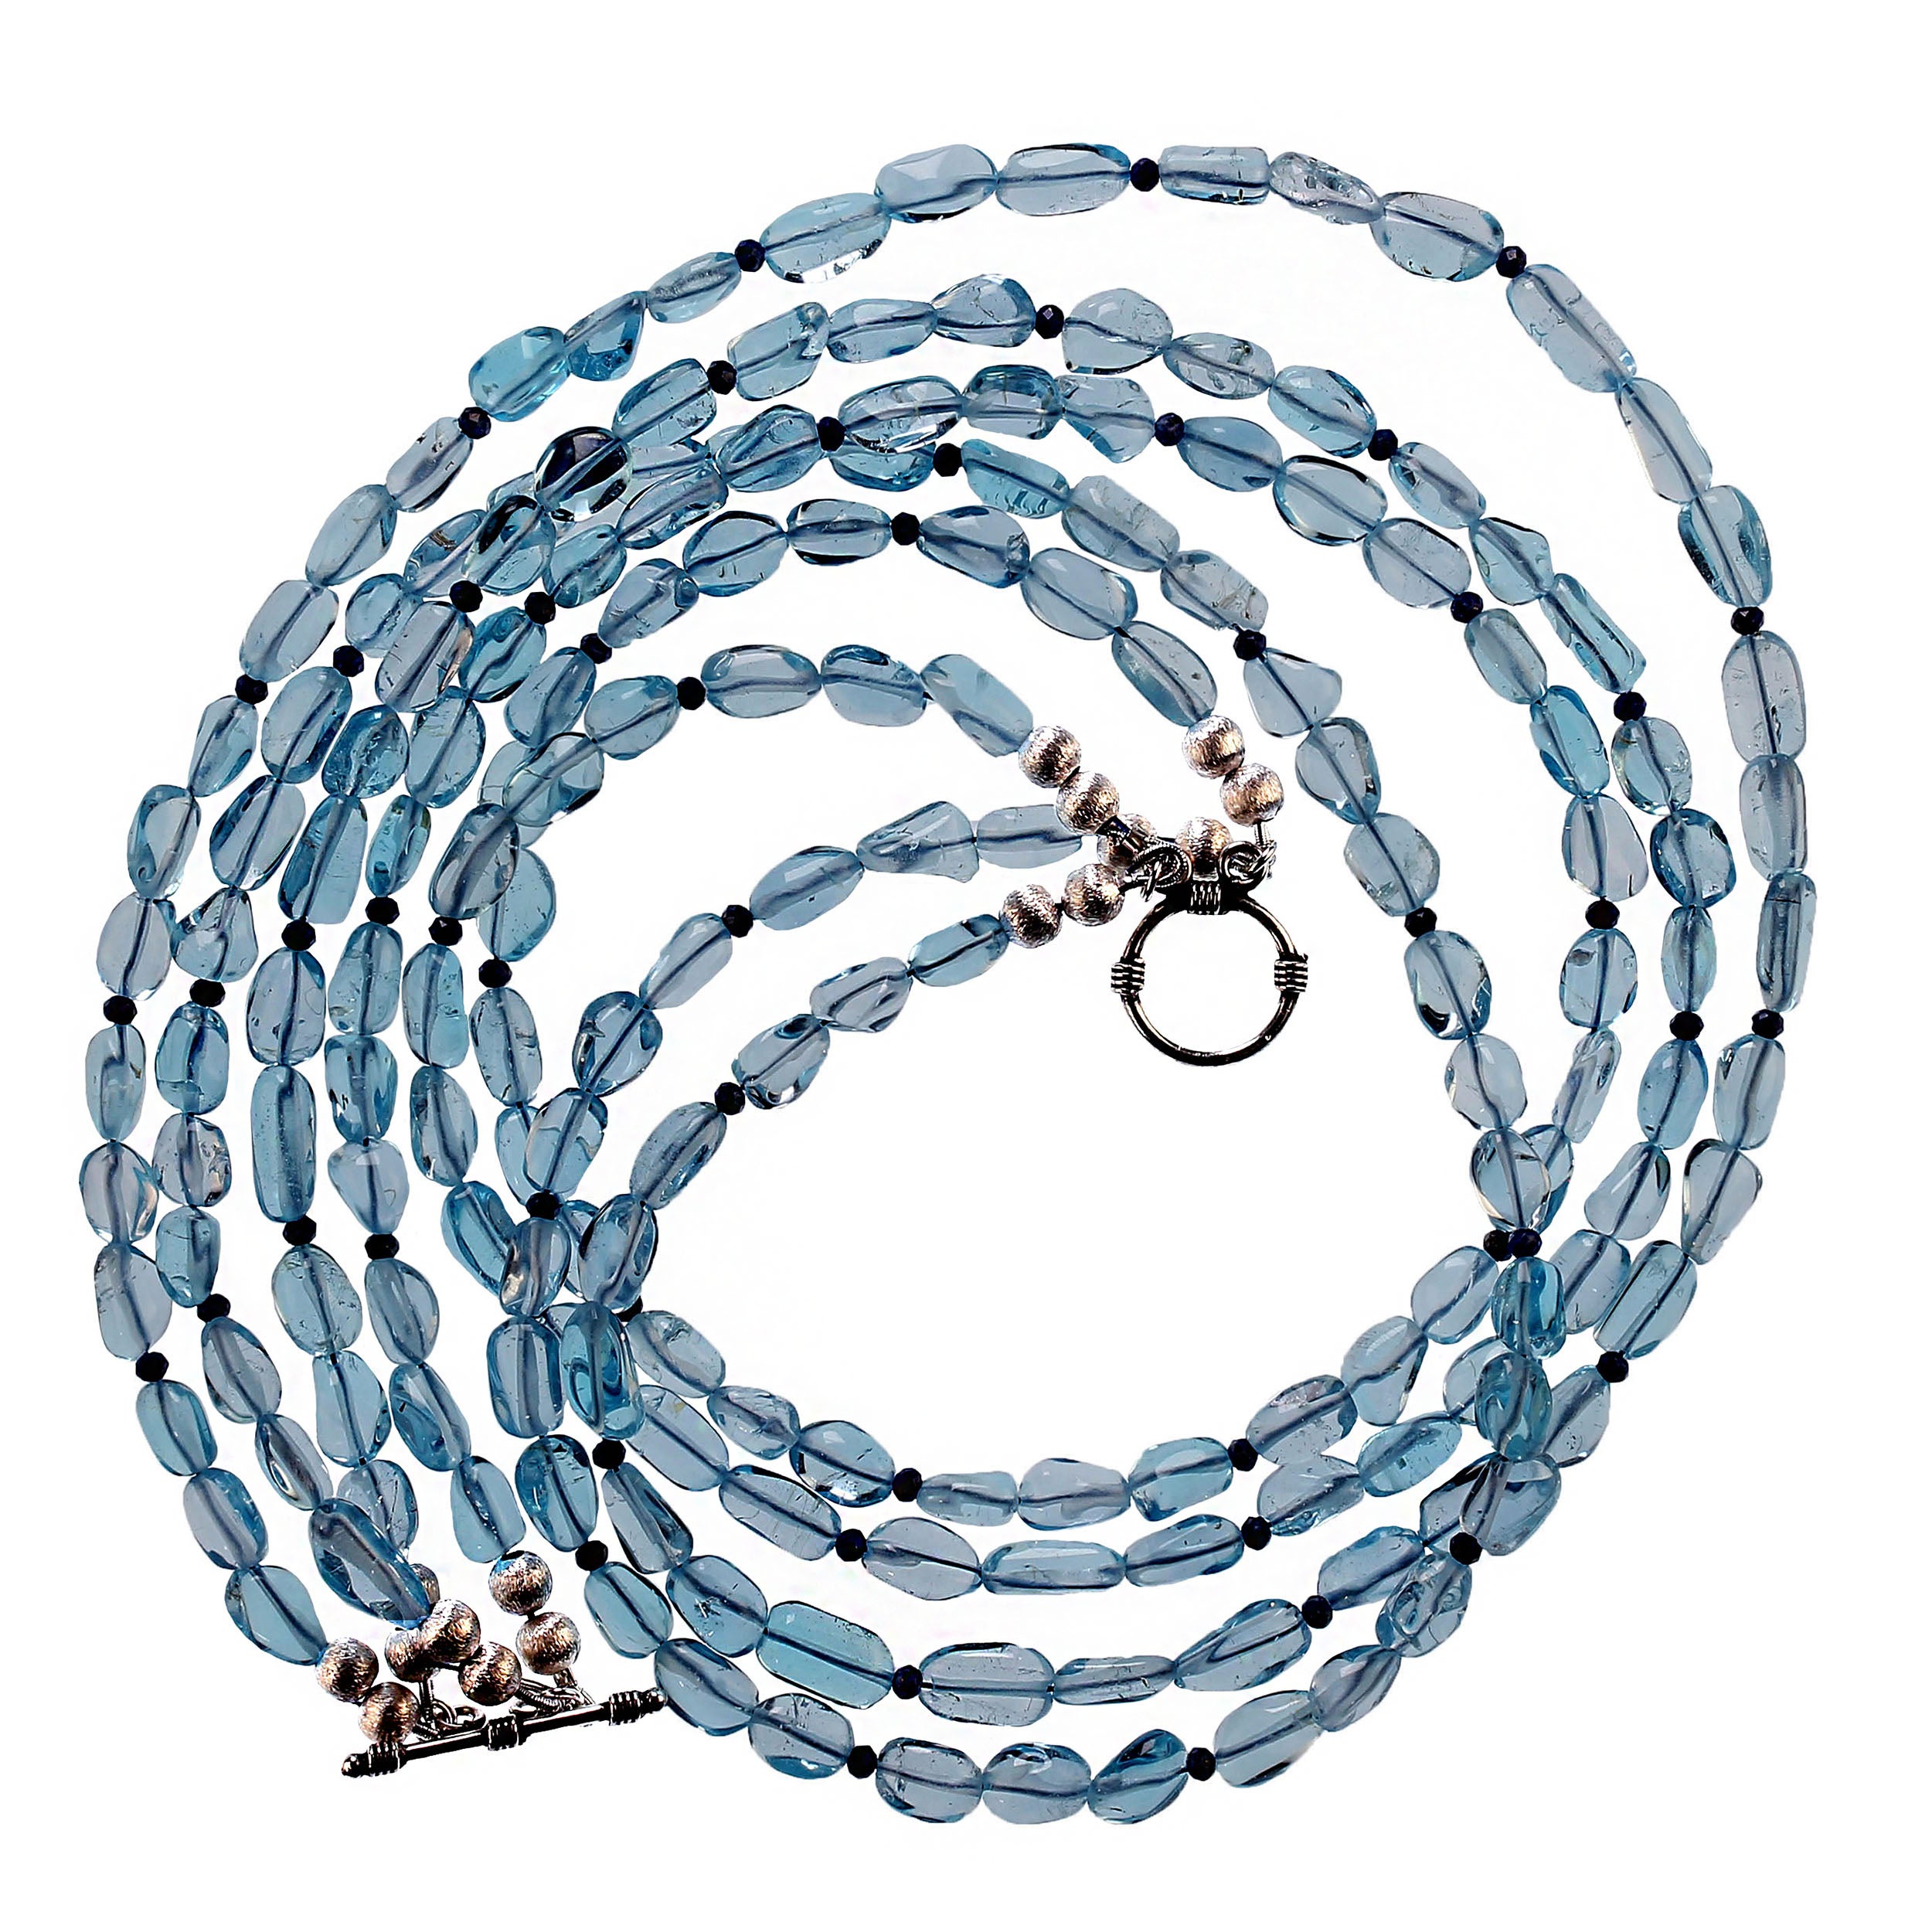 18-Zoll einzigartige funkelnde blaue Topas-Nugget-Halskette mit Lapislazuli-Akzenten.  Diese wunderschöne Halskette besteht aus hochglanzpolierten, sauberen blauen Topasnuggets, 10x5 mm, die mit 3 mm großen, facettierten Lapislazuli-Rondellen